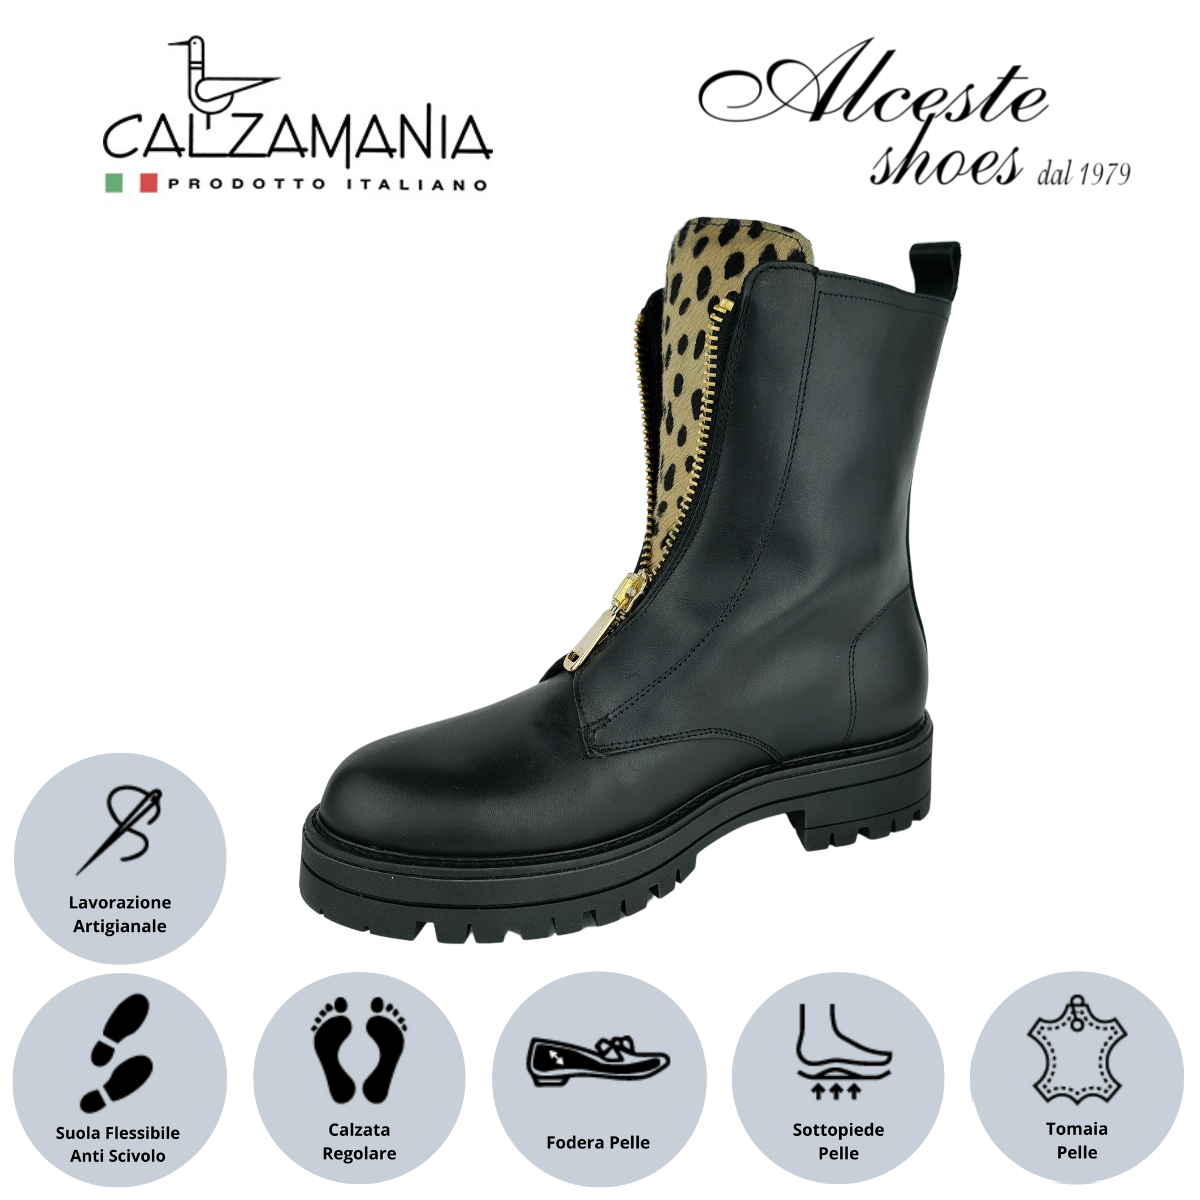 Anfibio Donna con Cerniera "Calzamania" Art. 9052 in Pelle Nero e Cavallino Maculato Alceste Shoes 13